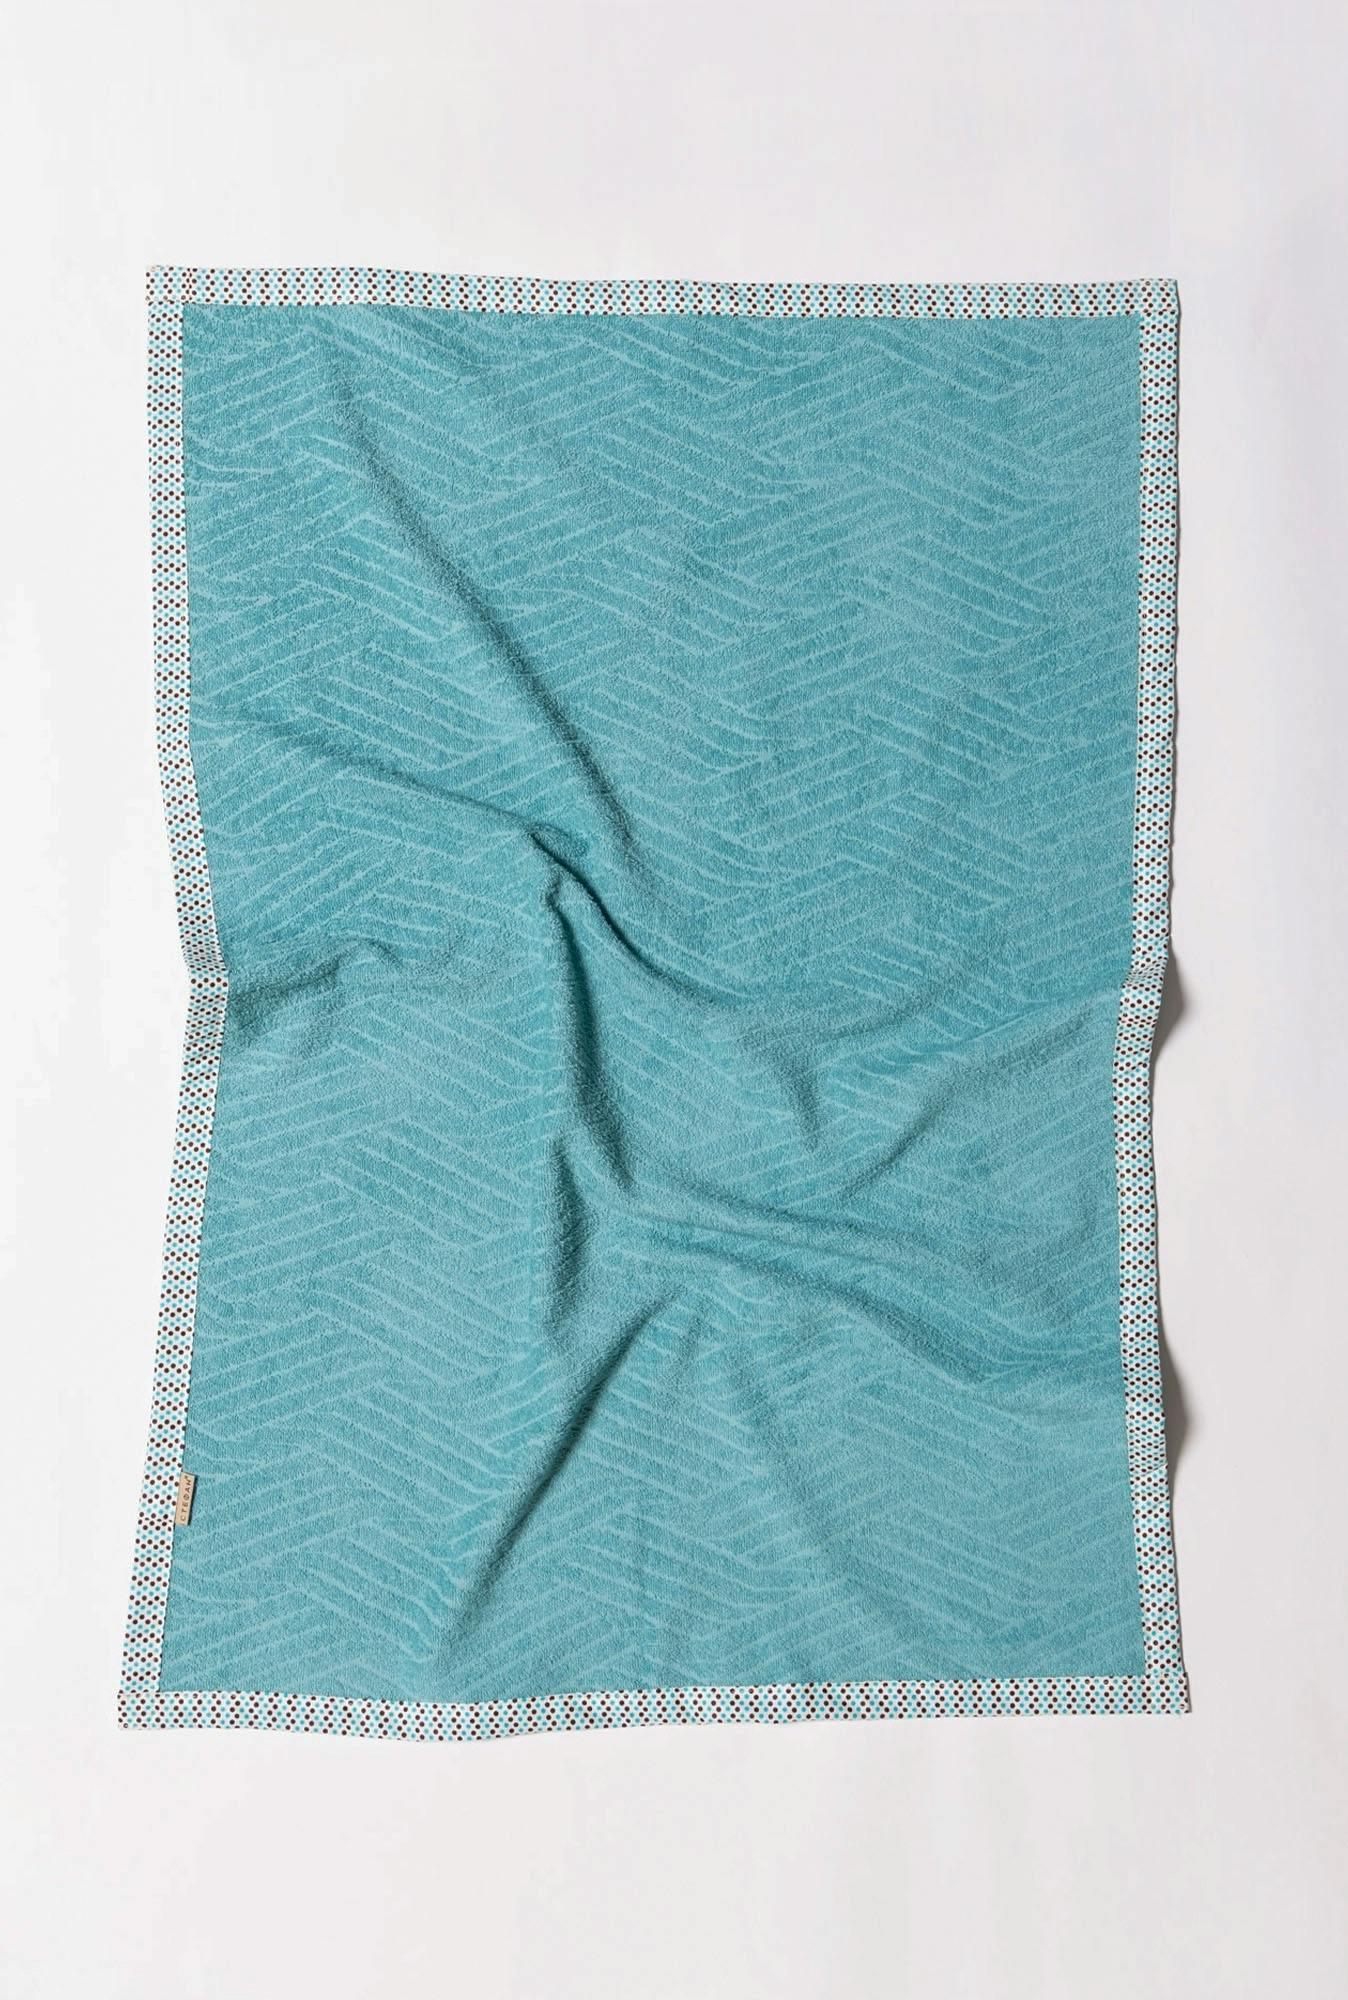 Bebi prekrivač frotir plavi